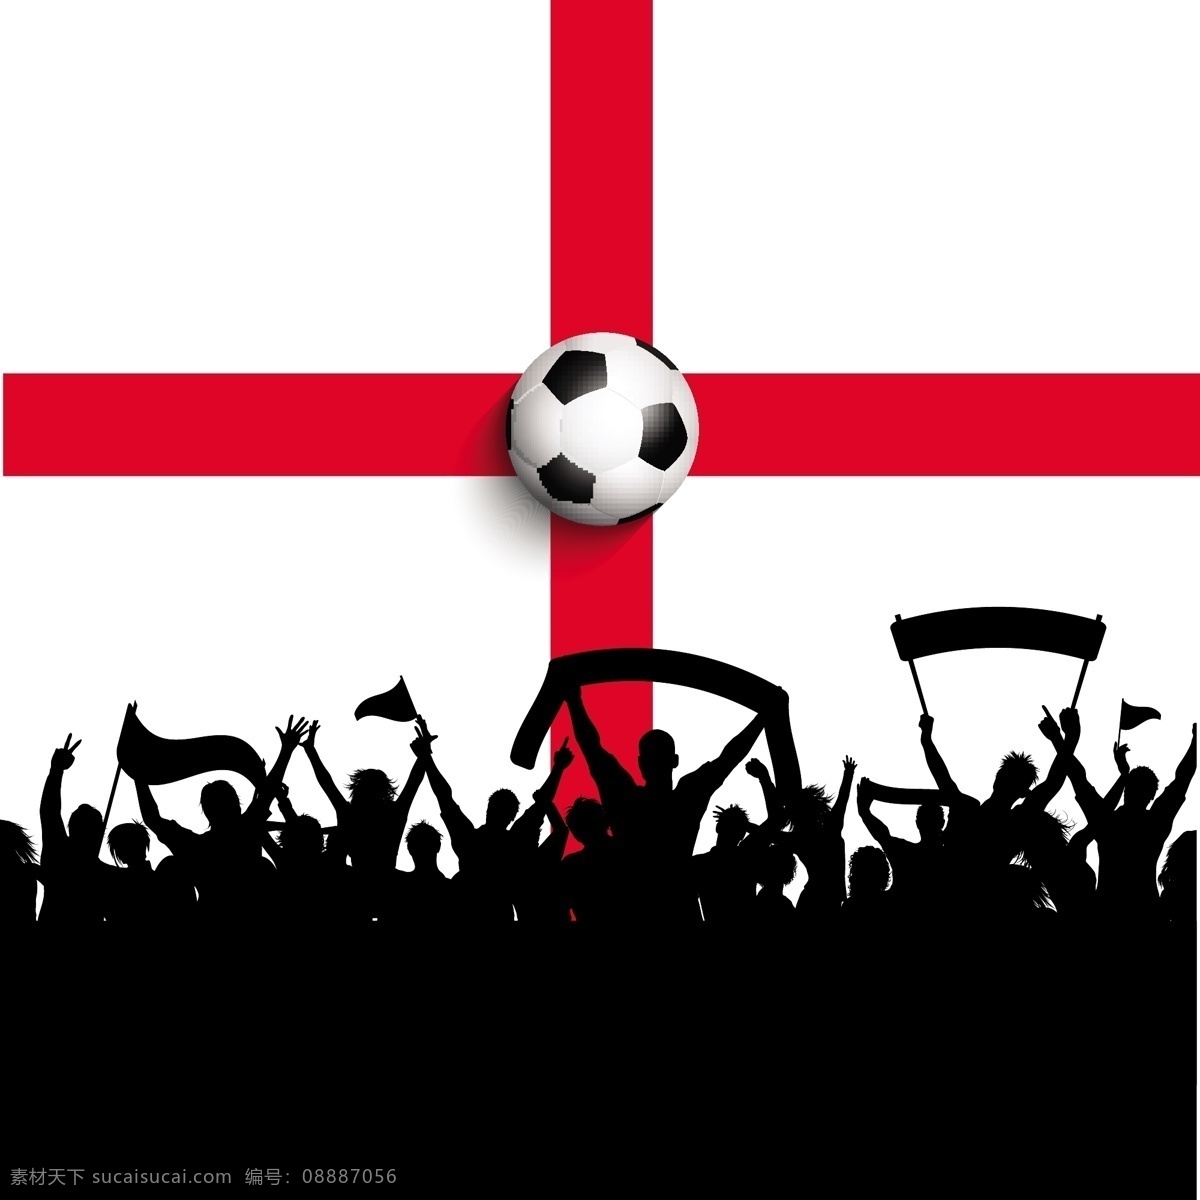 英格兰 足球 体育 剪影 人物 国旗 庆典 活动 人群 胜利 大纲 球迷 联赛 千头万绪